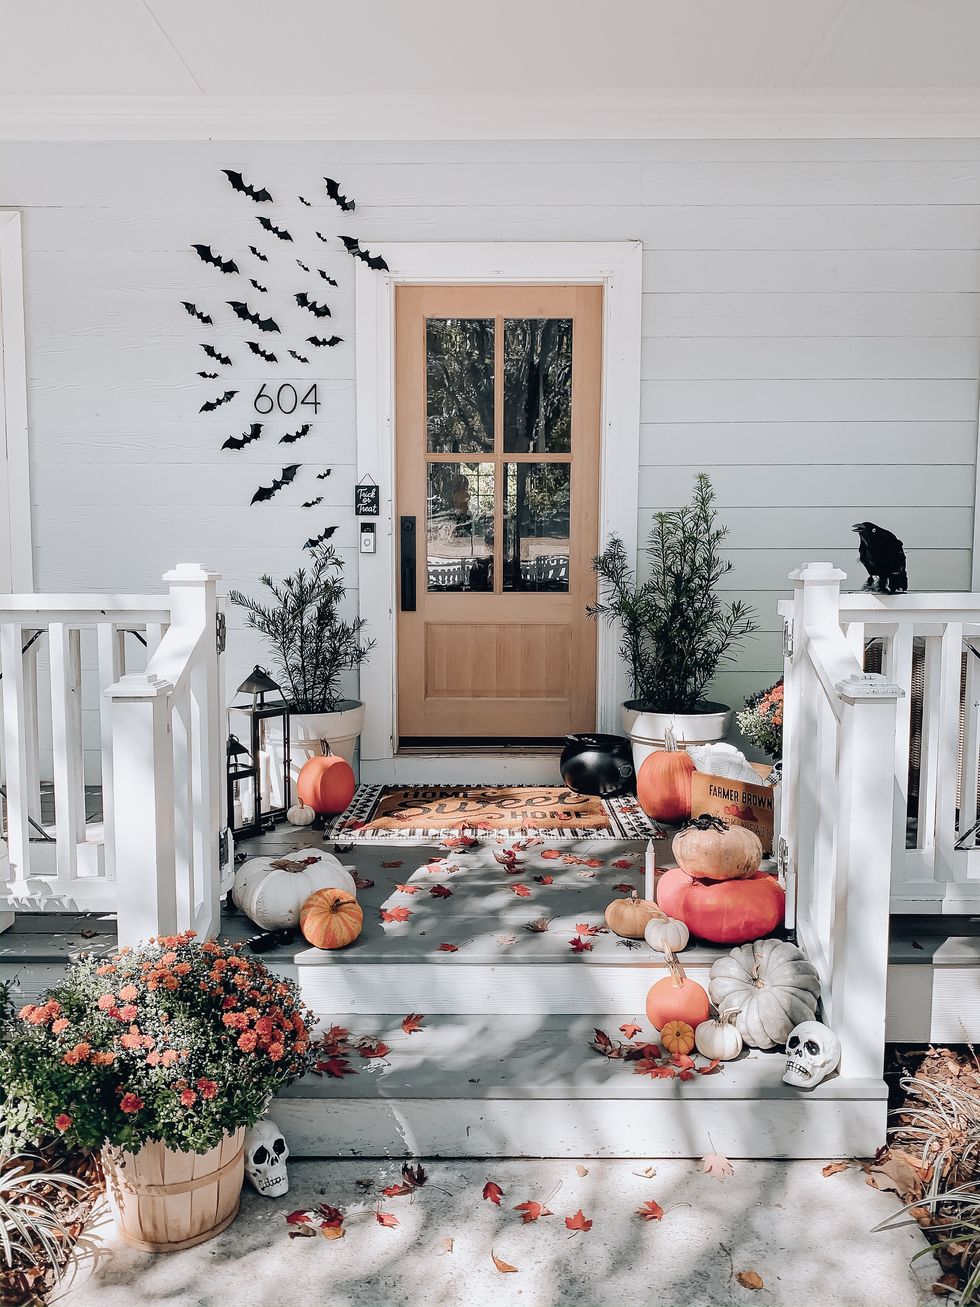 Sophisticated Autumn Outdoor Door Mat 18 x 30